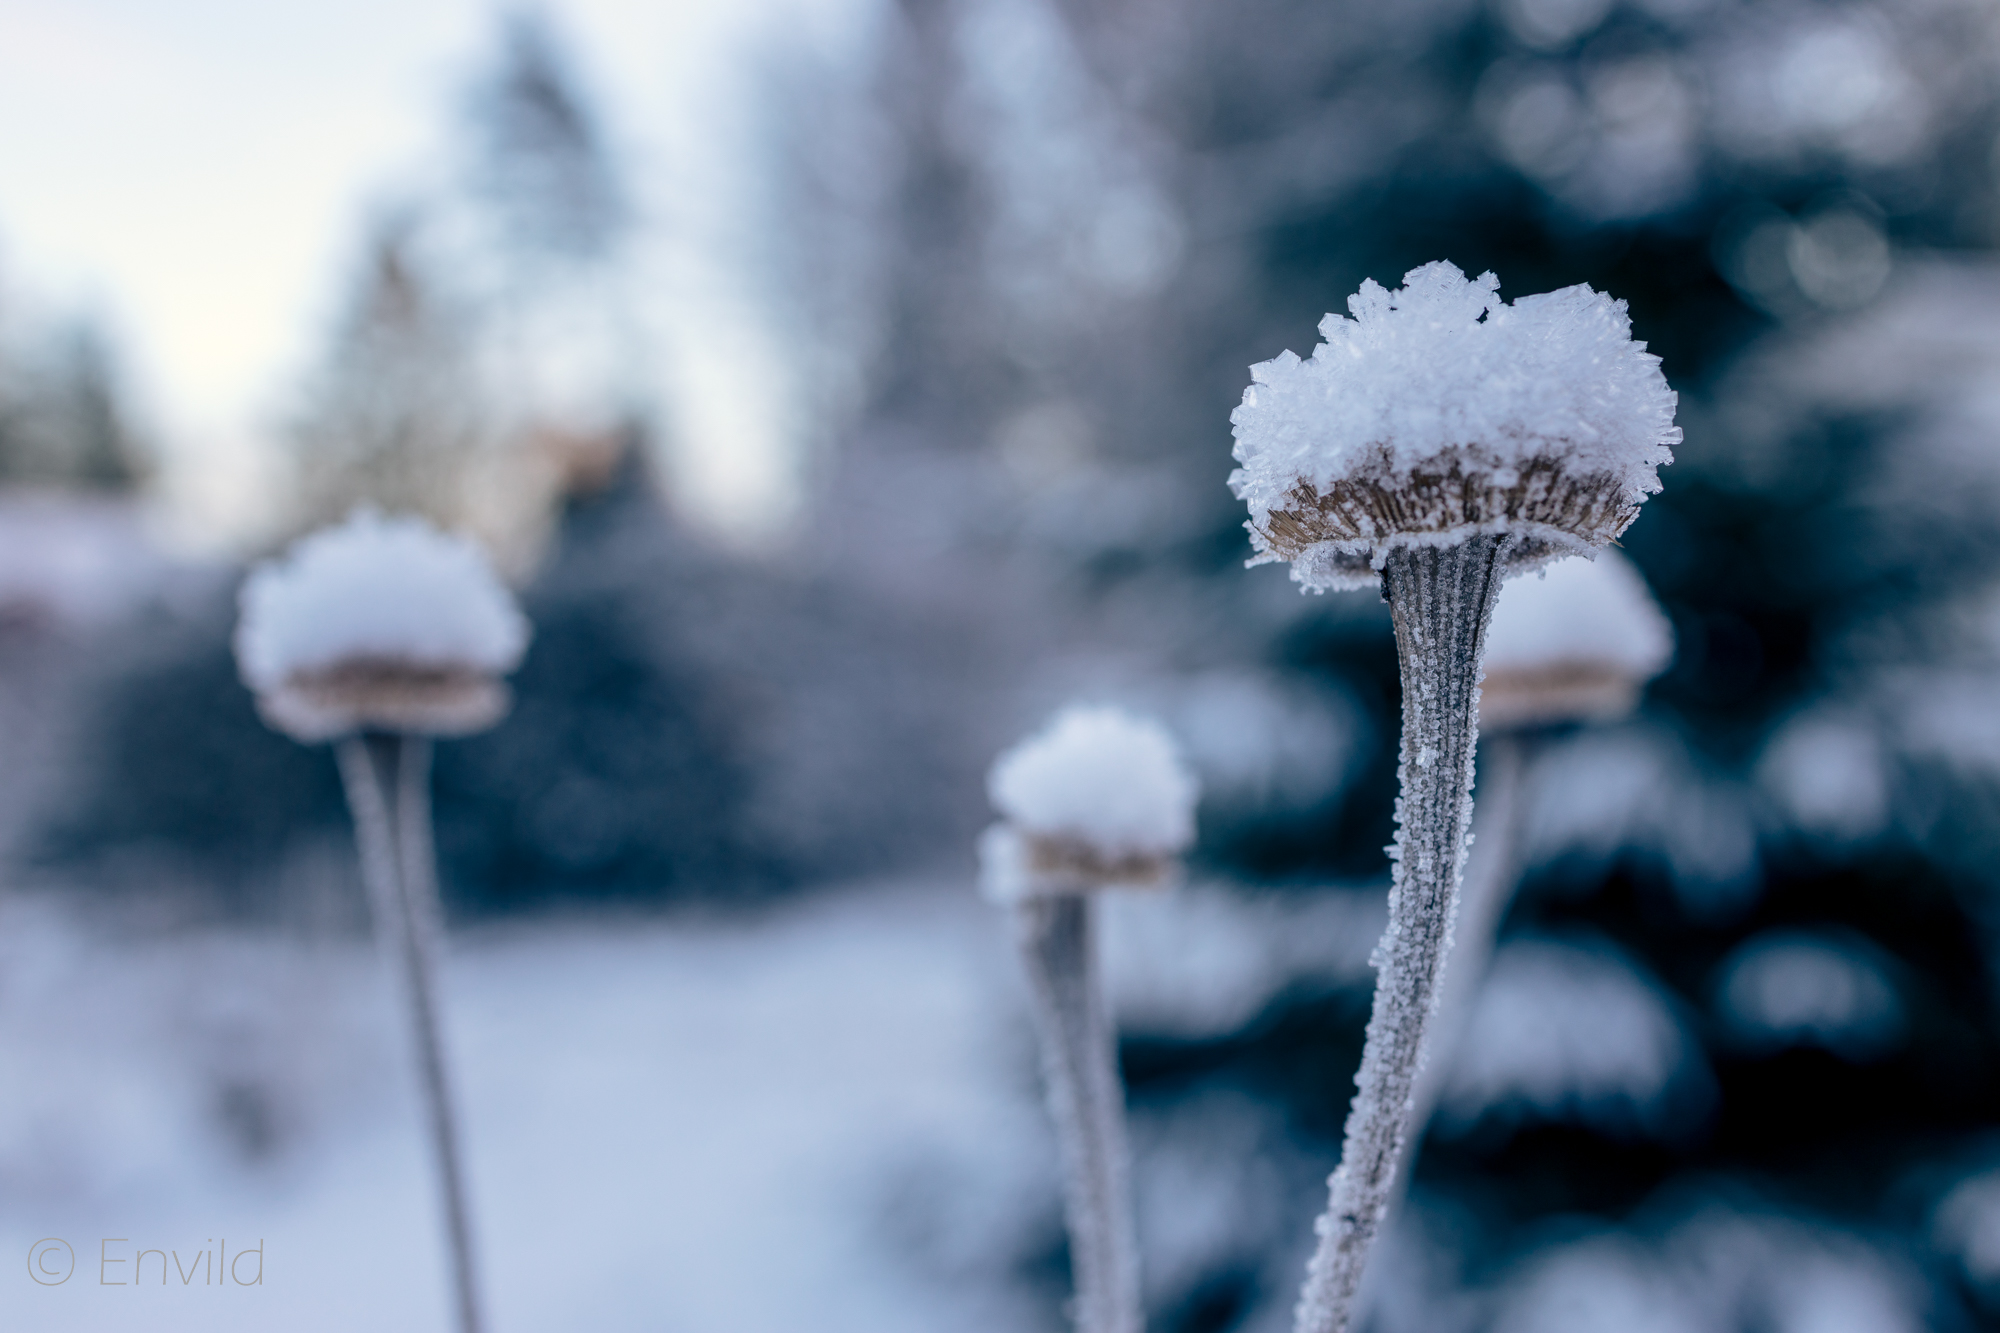 Frusna frökapslar. Vinter och snö. Foto Johanna Ene 2021.